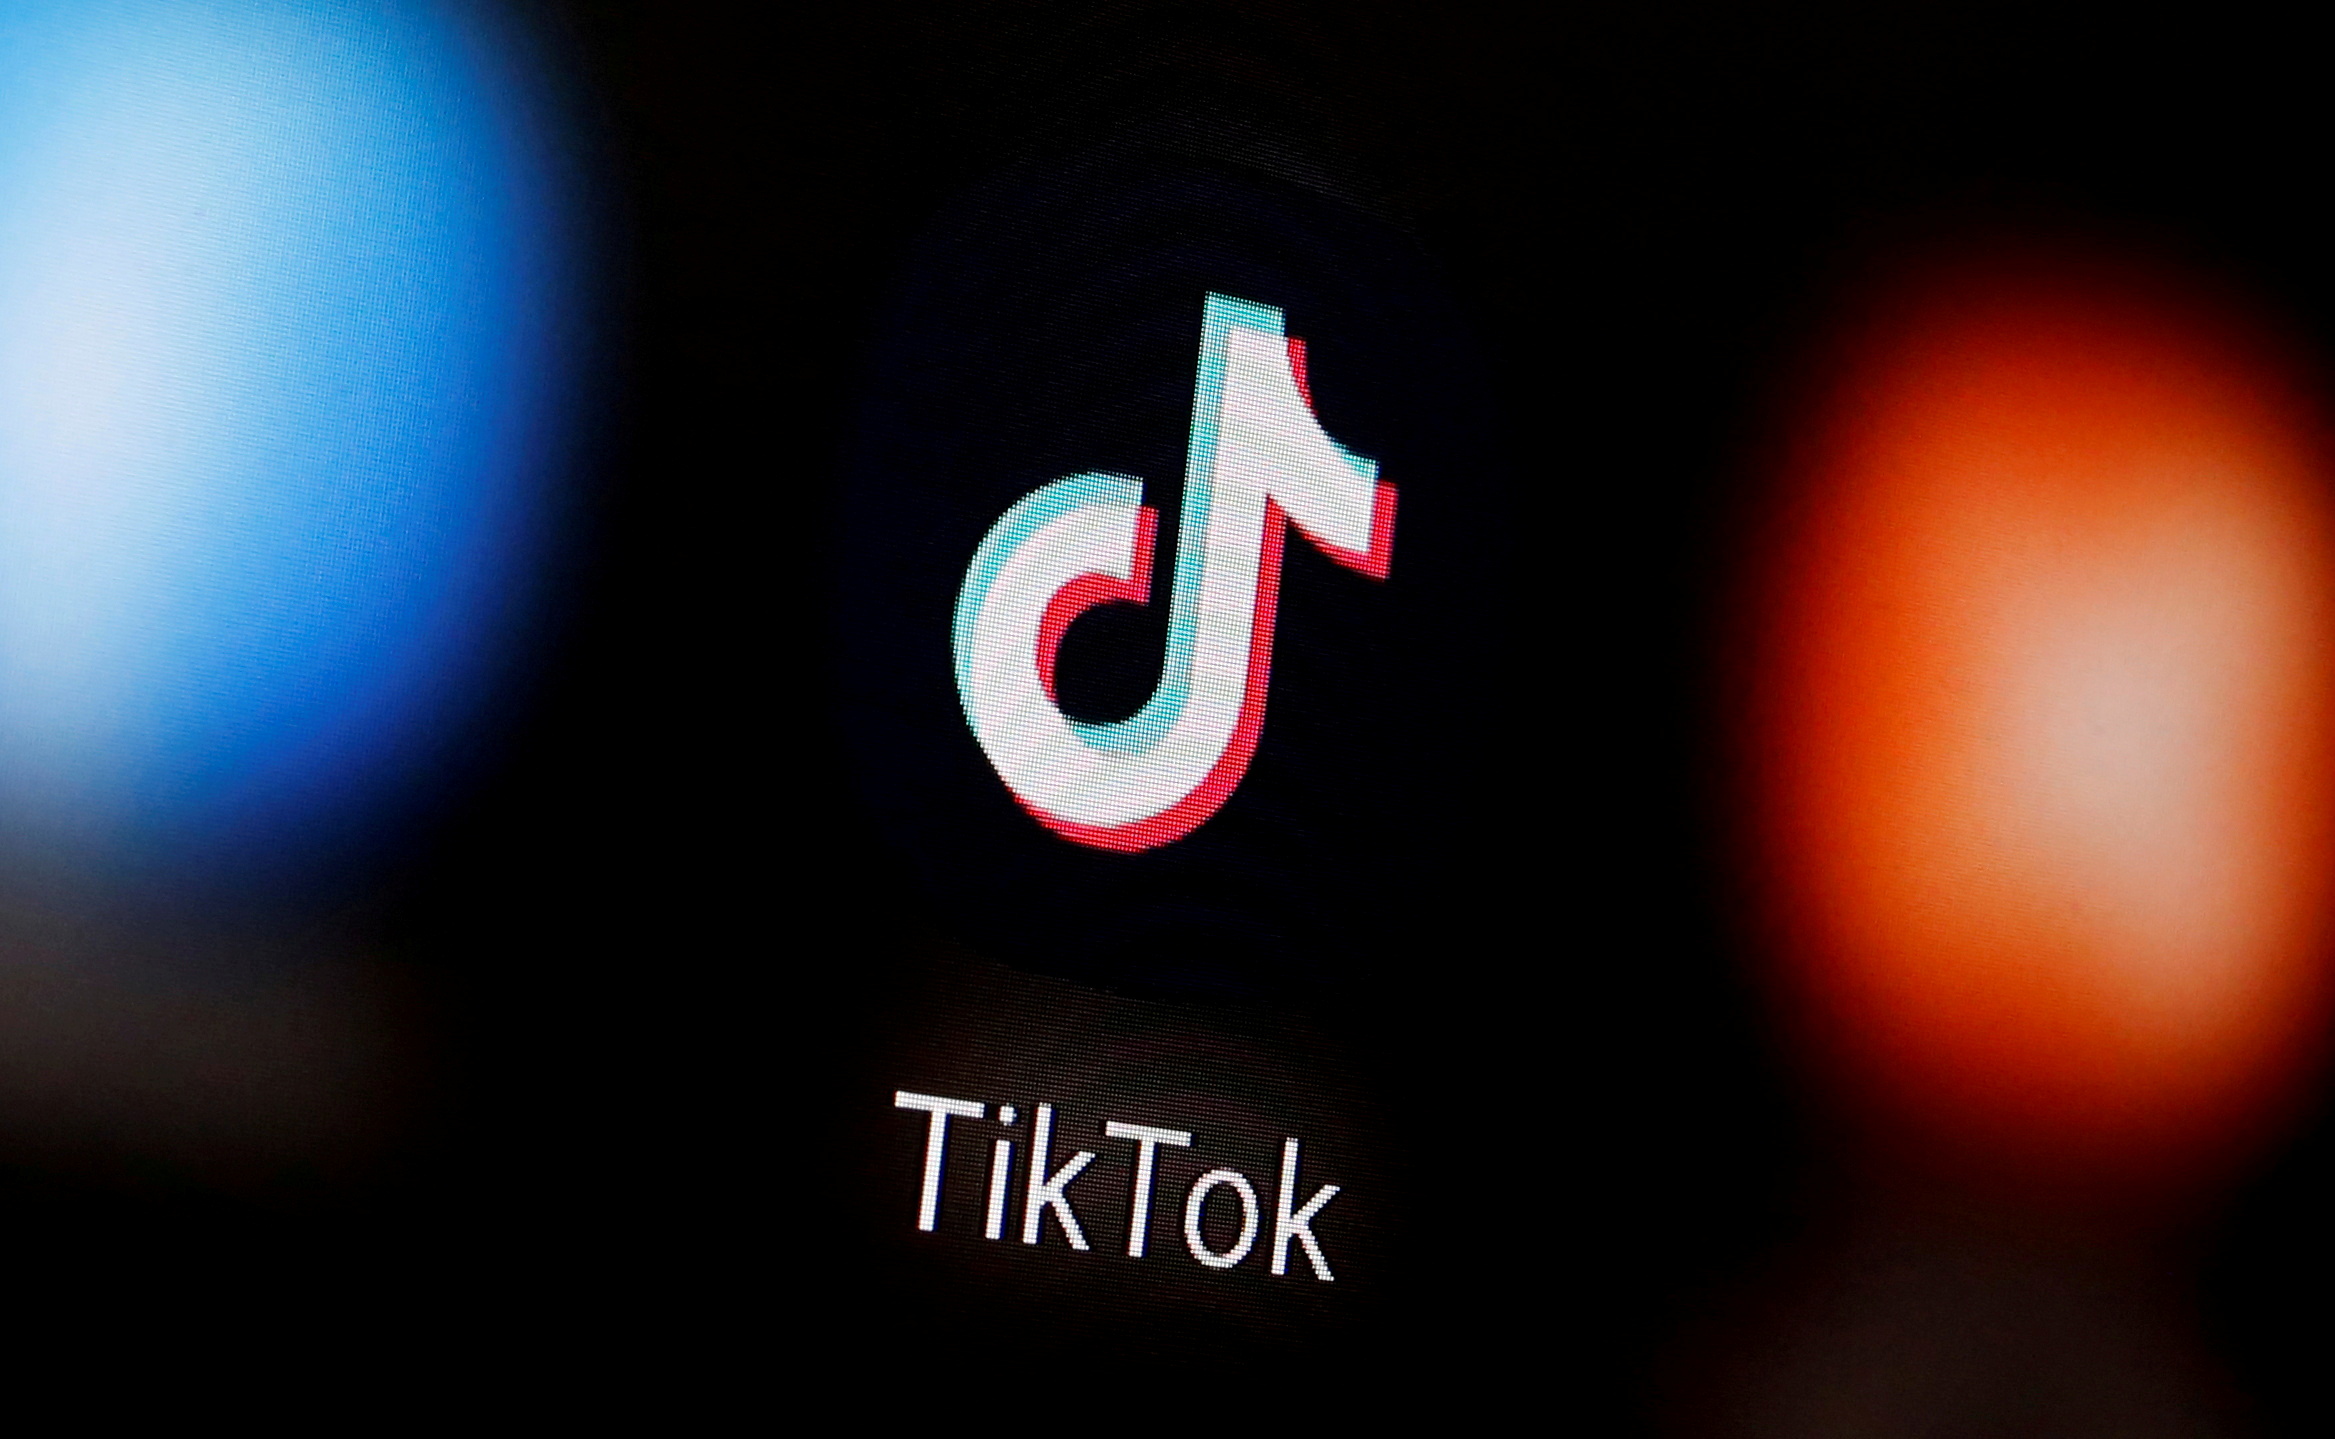 الحكومة الكندية تحظر تطبيق تيك توك على هواتفها وأجهزتها